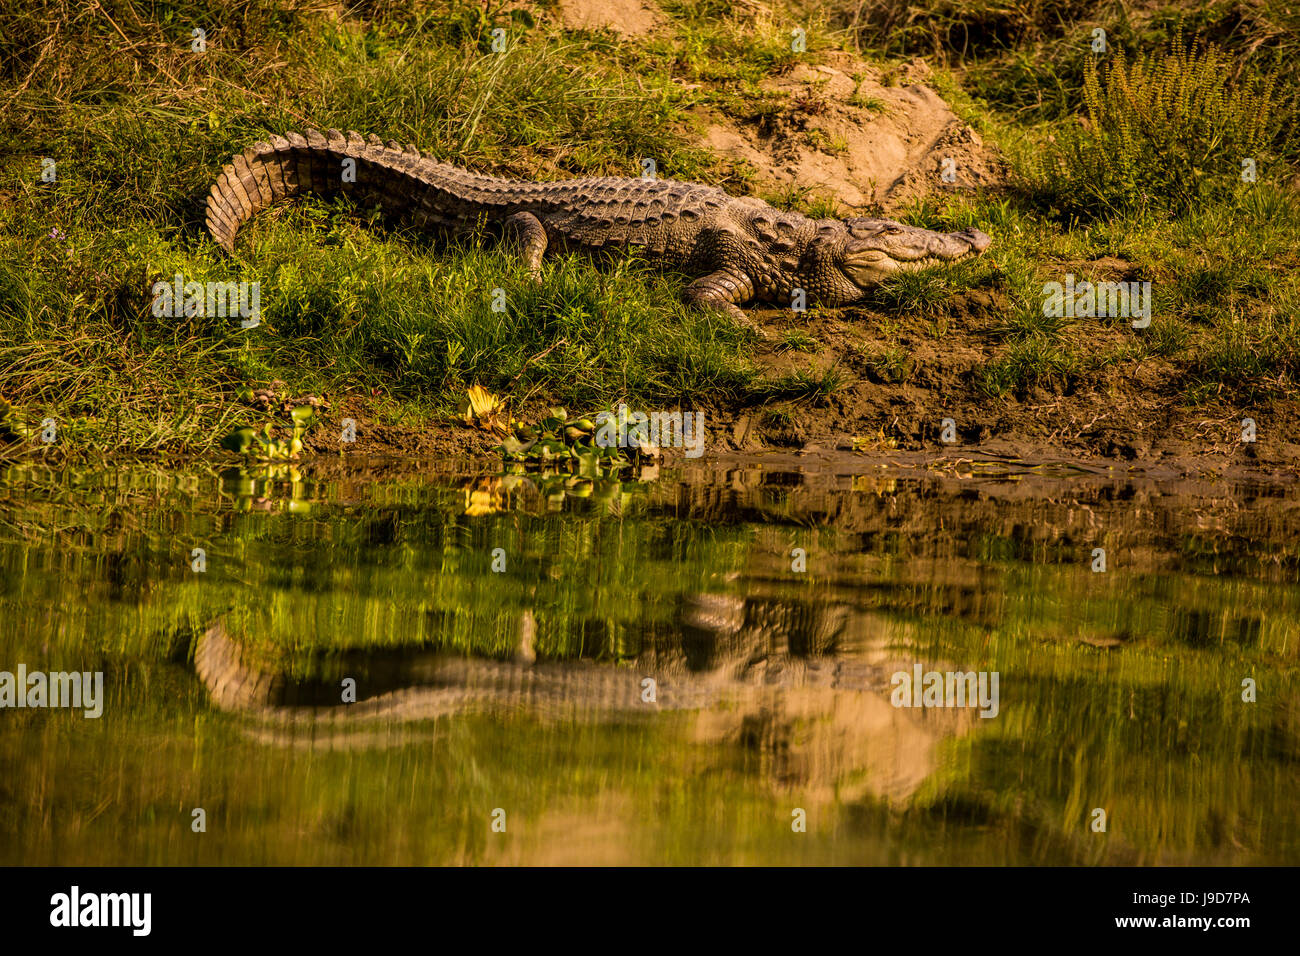 Crocodile ensoleillement se stesso da un fiume, Chitwan elefante santuario, Nepal, Asia Foto Stock